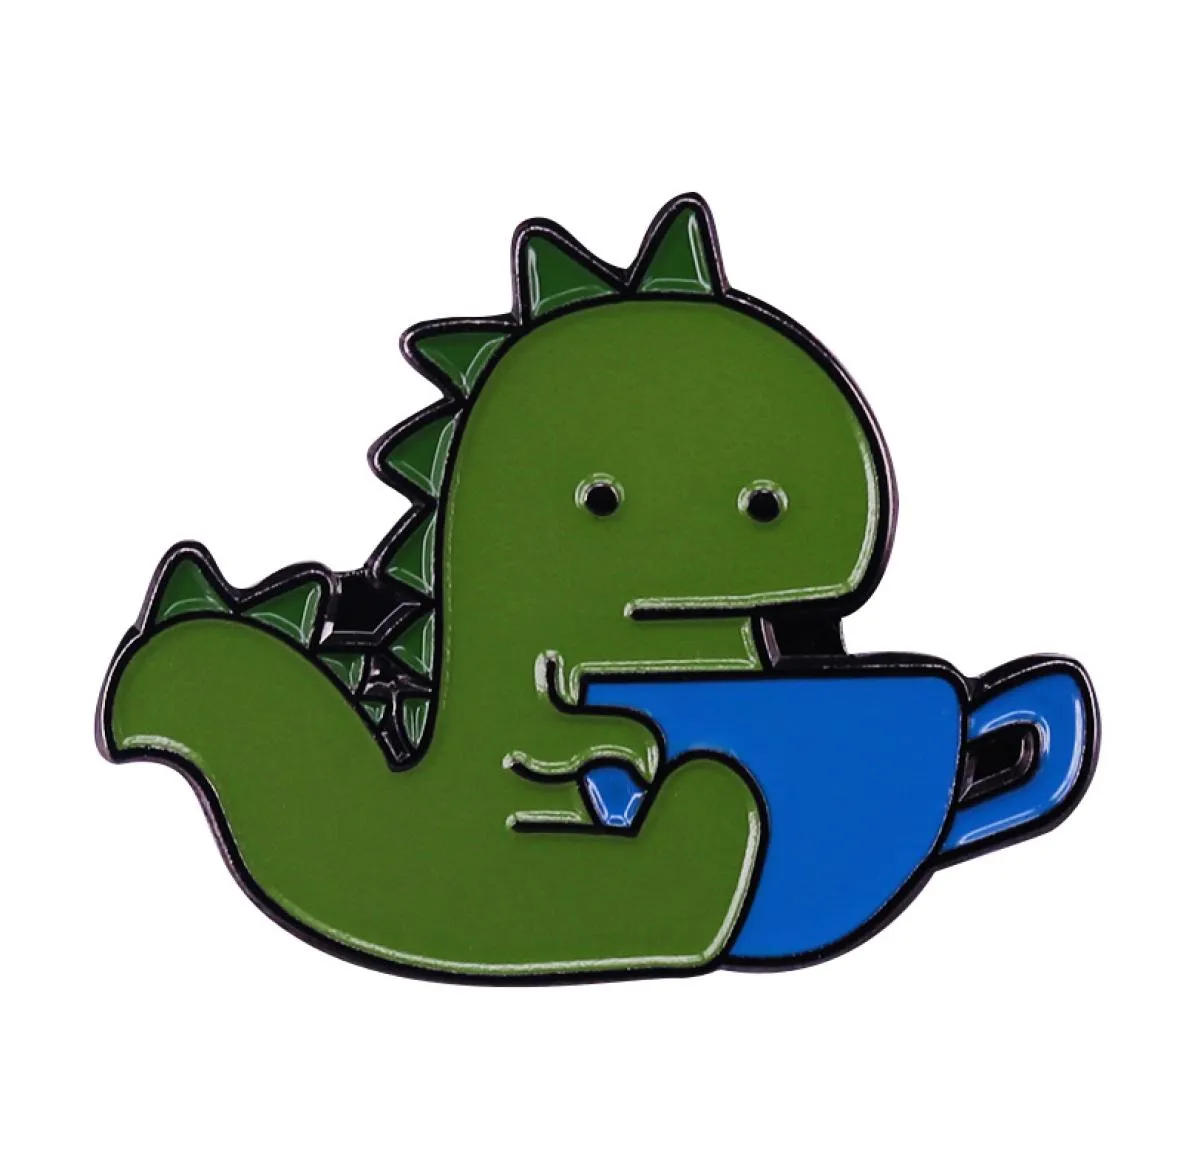 Divertente spilla smaltata Tea Rex Adorabile distintivo del tè del dinosauro Combina due delle cose del mondo7926397